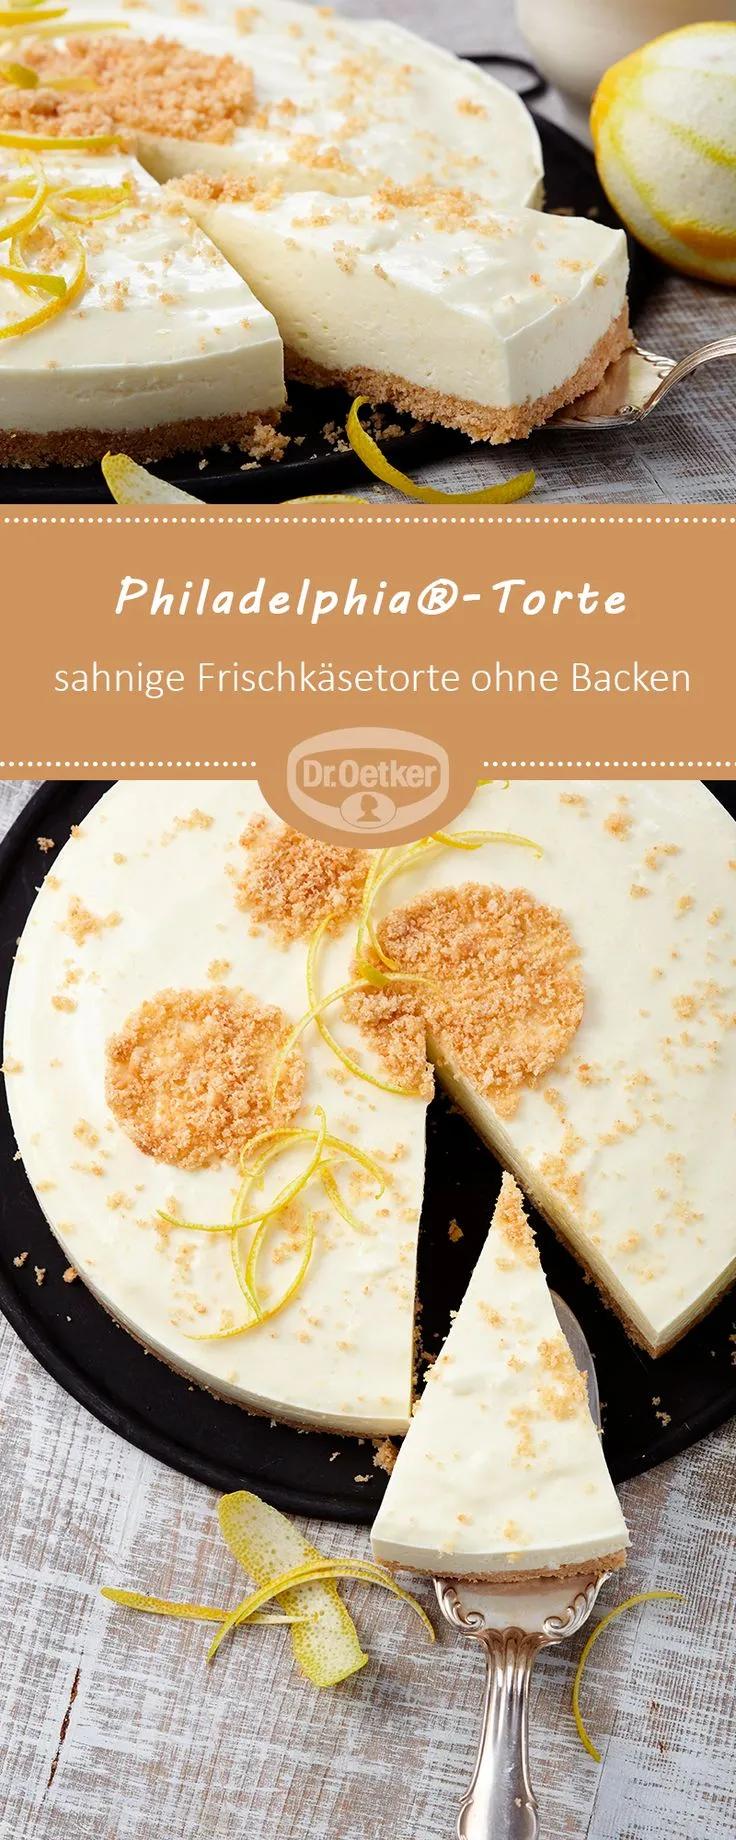 Philadelphia®-Torte: Eine sahnige Frischkäsetorte ohne Backen mit ...